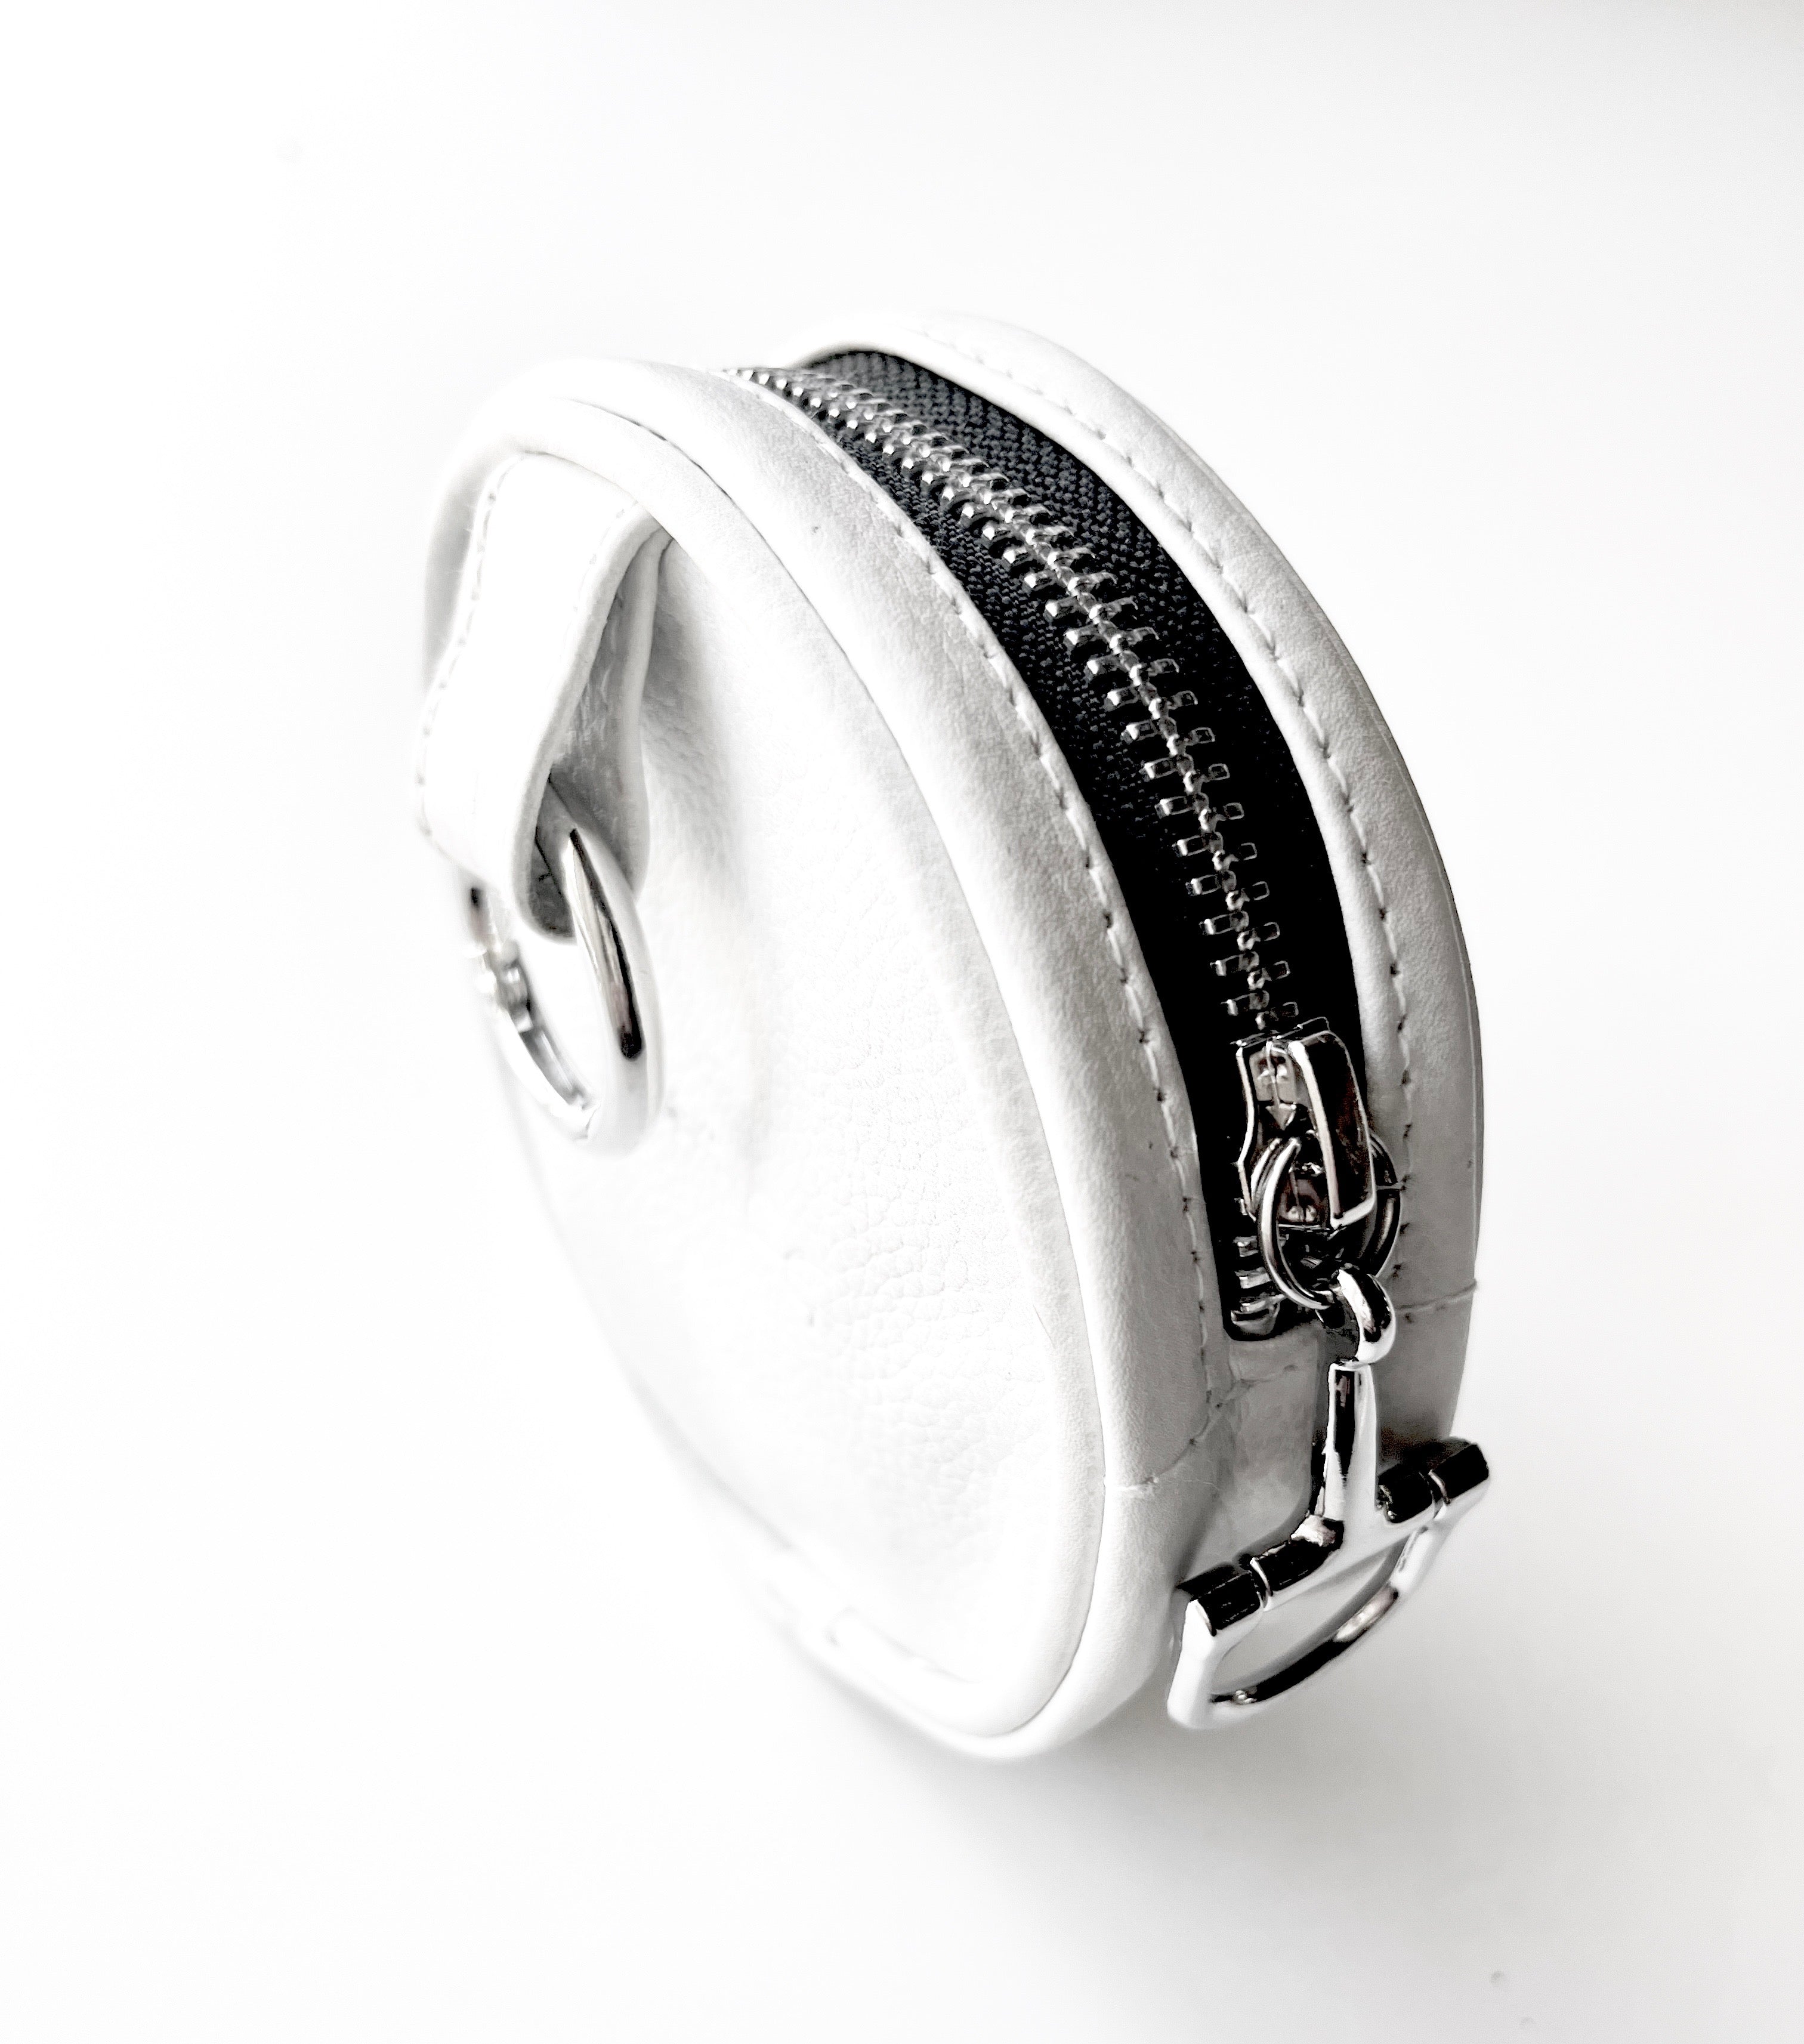 BLAISE ZIP POUCH - white - Treat Pouch - Coin pouch - shoulder bag - Belt Bag - belt pouch - AtelierCG™